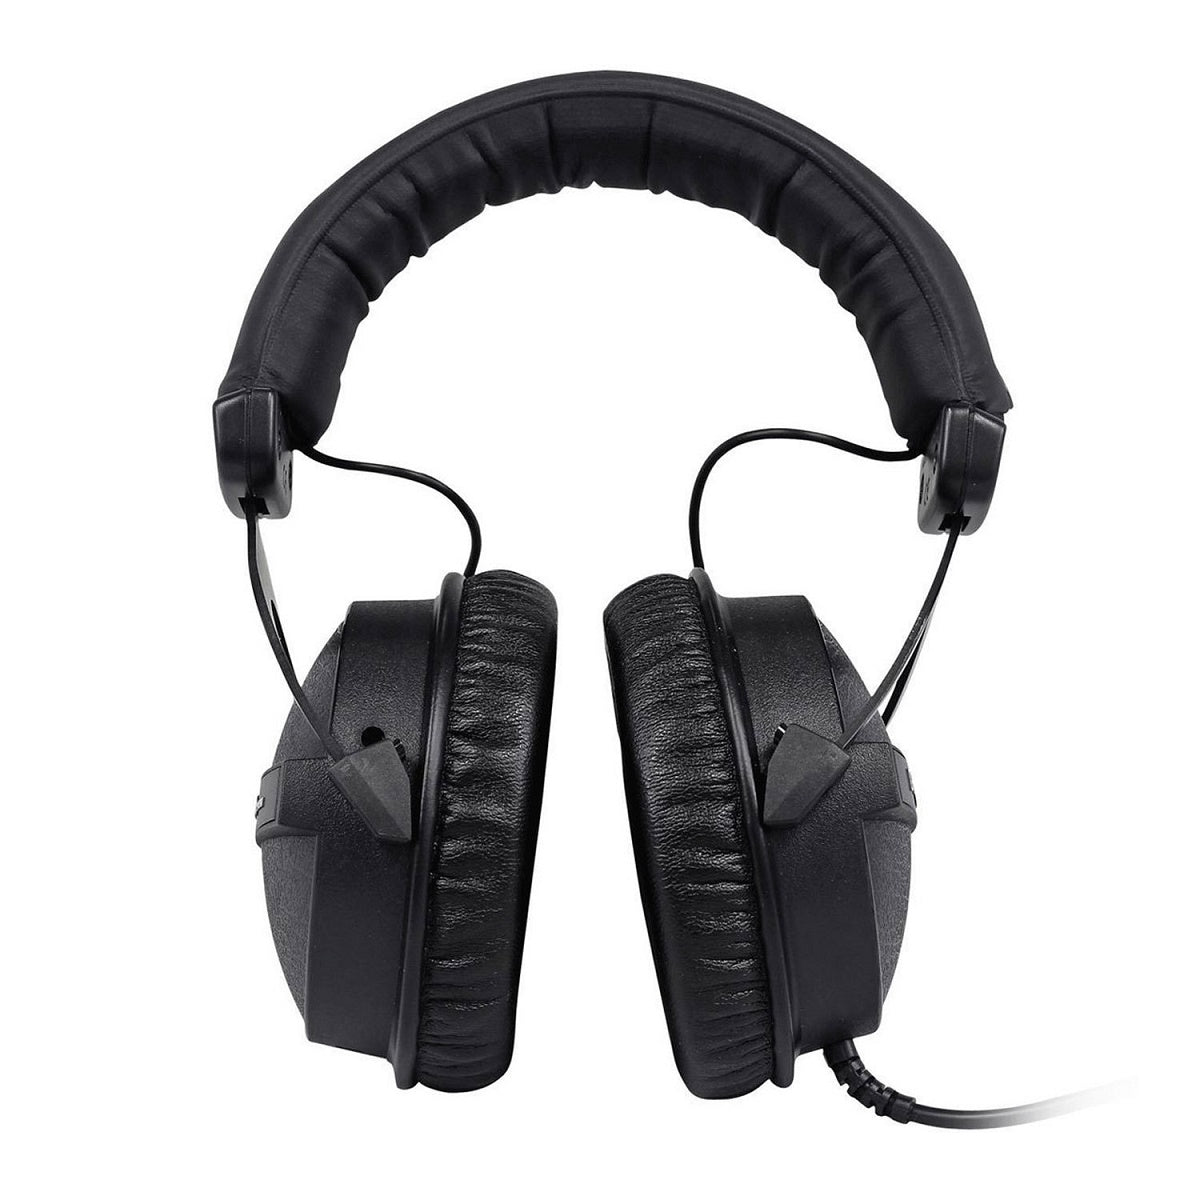 Beyerdynamic DT-770 Pro 32 Ohm auriculares de estudio